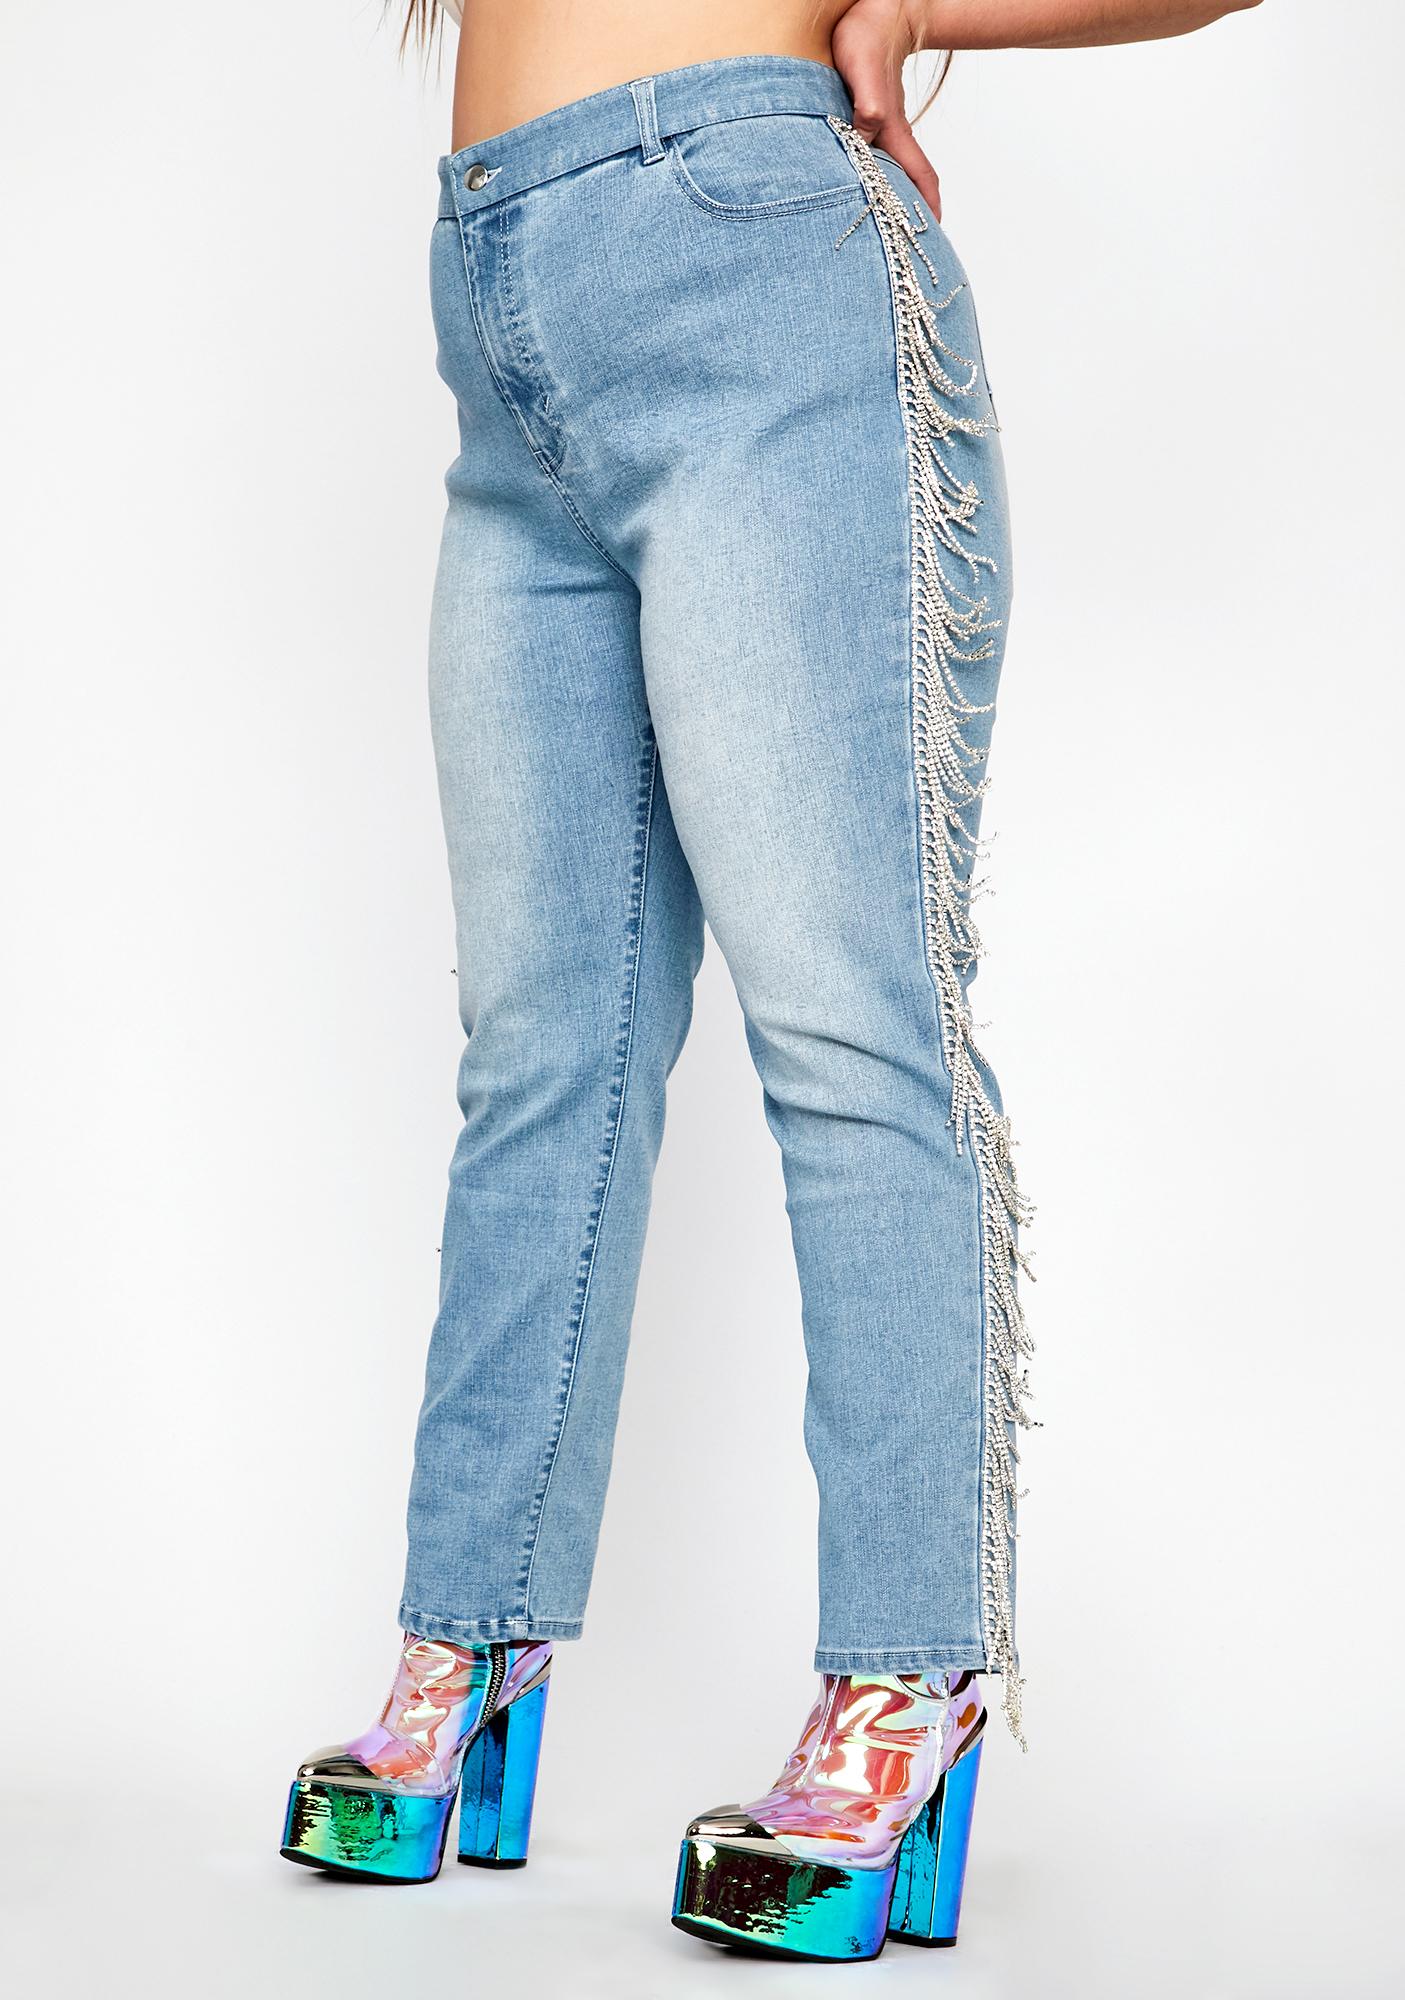 fringe bottom jeans plus size